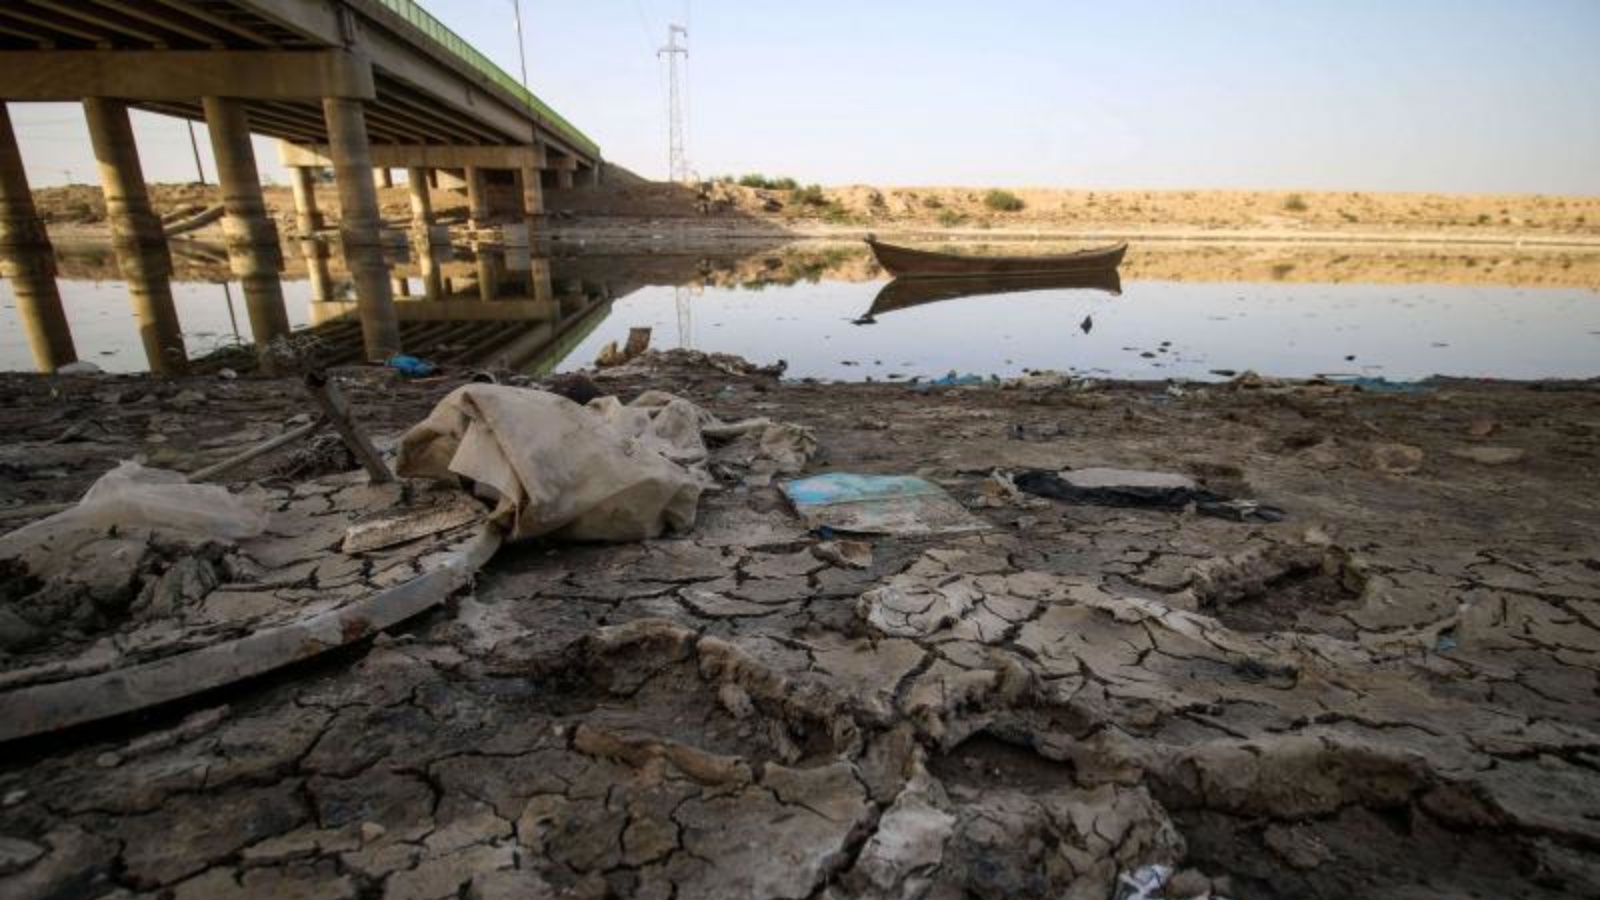 الأرض المتعطشة للماء. منظر للشاطئ الجاف لقناة الري بالقرب من قرية السيد الدخيل جنوب بغداد